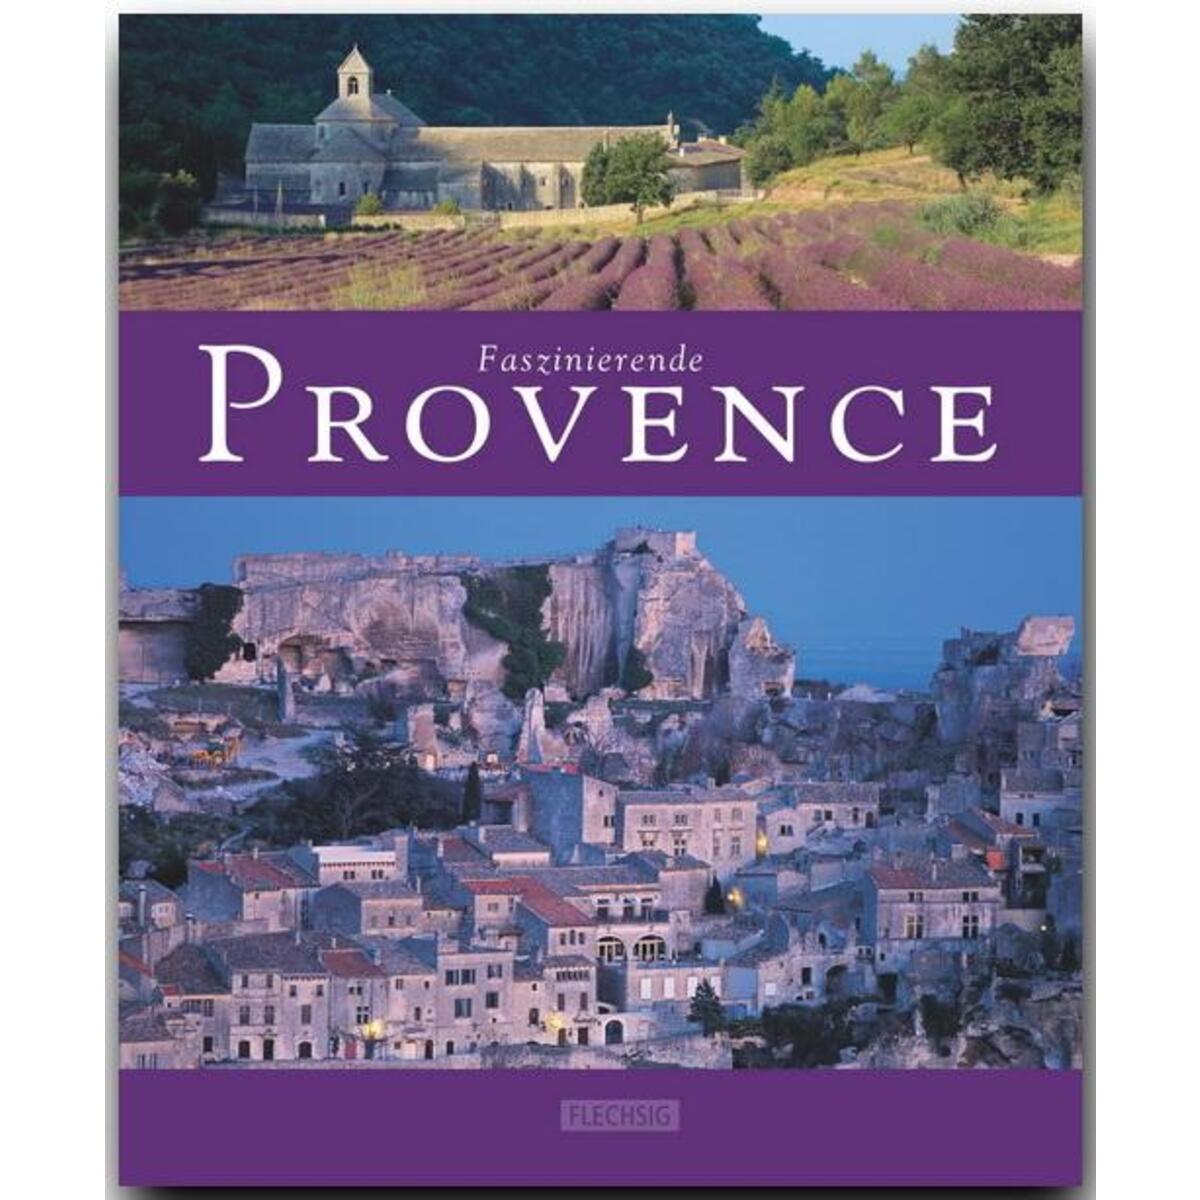 Faszinierende Provence von Flechsig Verlag